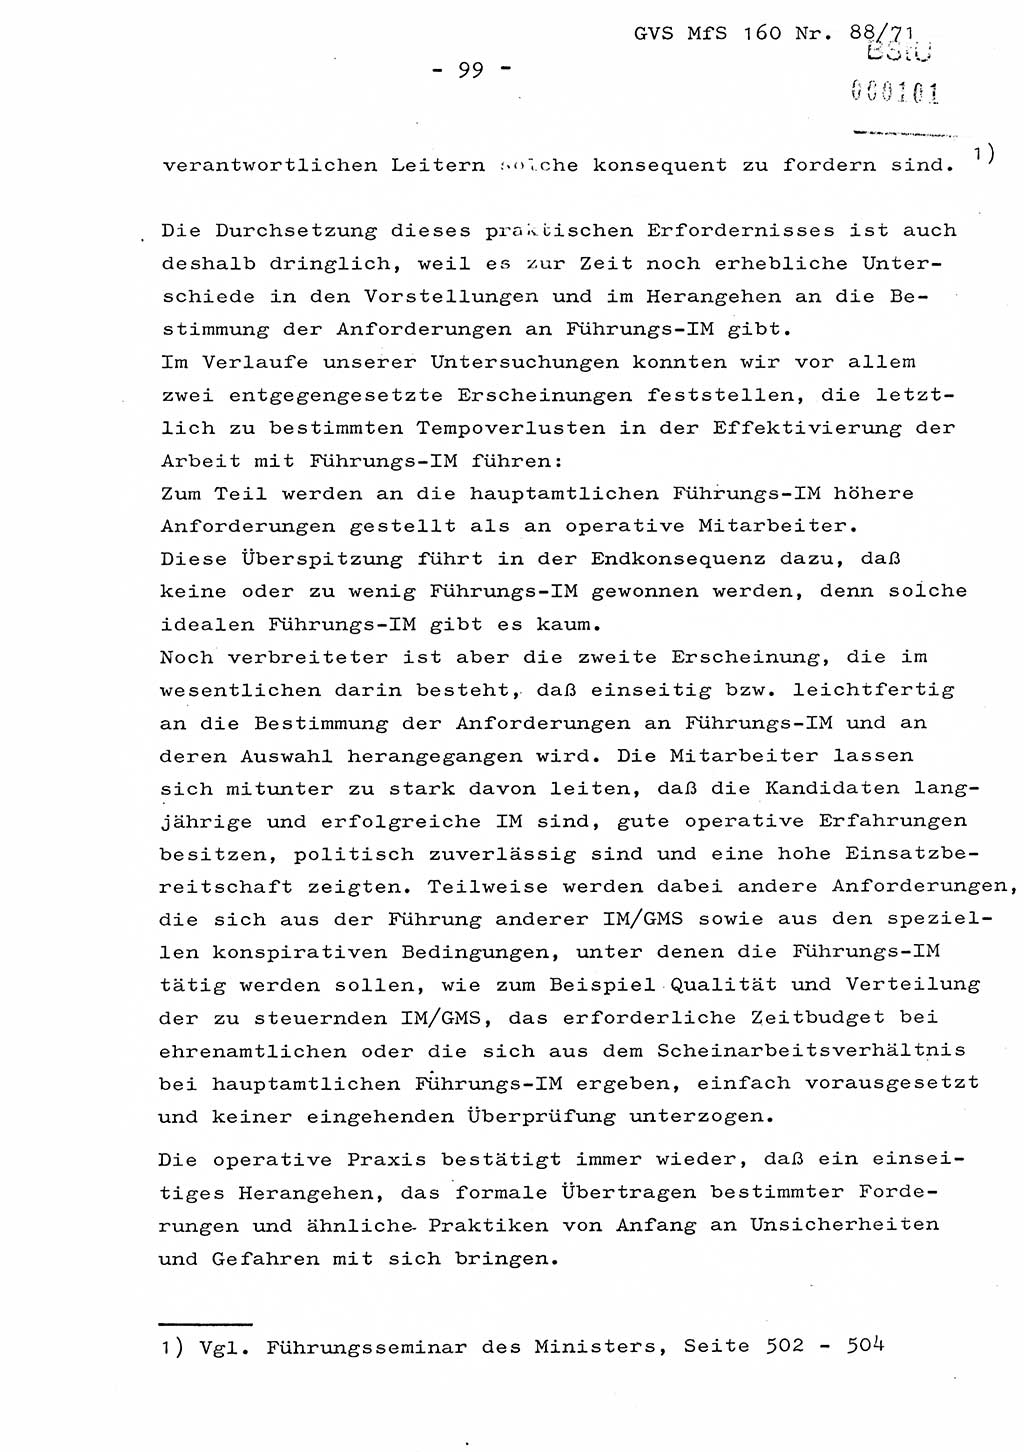 Dissertation Oberstleutnant Josef Schwarz (BV Schwerin), Major Fritz Amm (JHS), Hauptmann Peter Gräßler (JHS), Ministerium für Staatssicherheit (MfS) [Deutsche Demokratische Republik (DDR)], Juristische Hochschule (JHS), Geheime Verschlußsache (GVS) 160-88/71, Potsdam 1972, Seite 99 (Diss. MfS DDR JHS GVS 160-88/71 1972, S. 99)